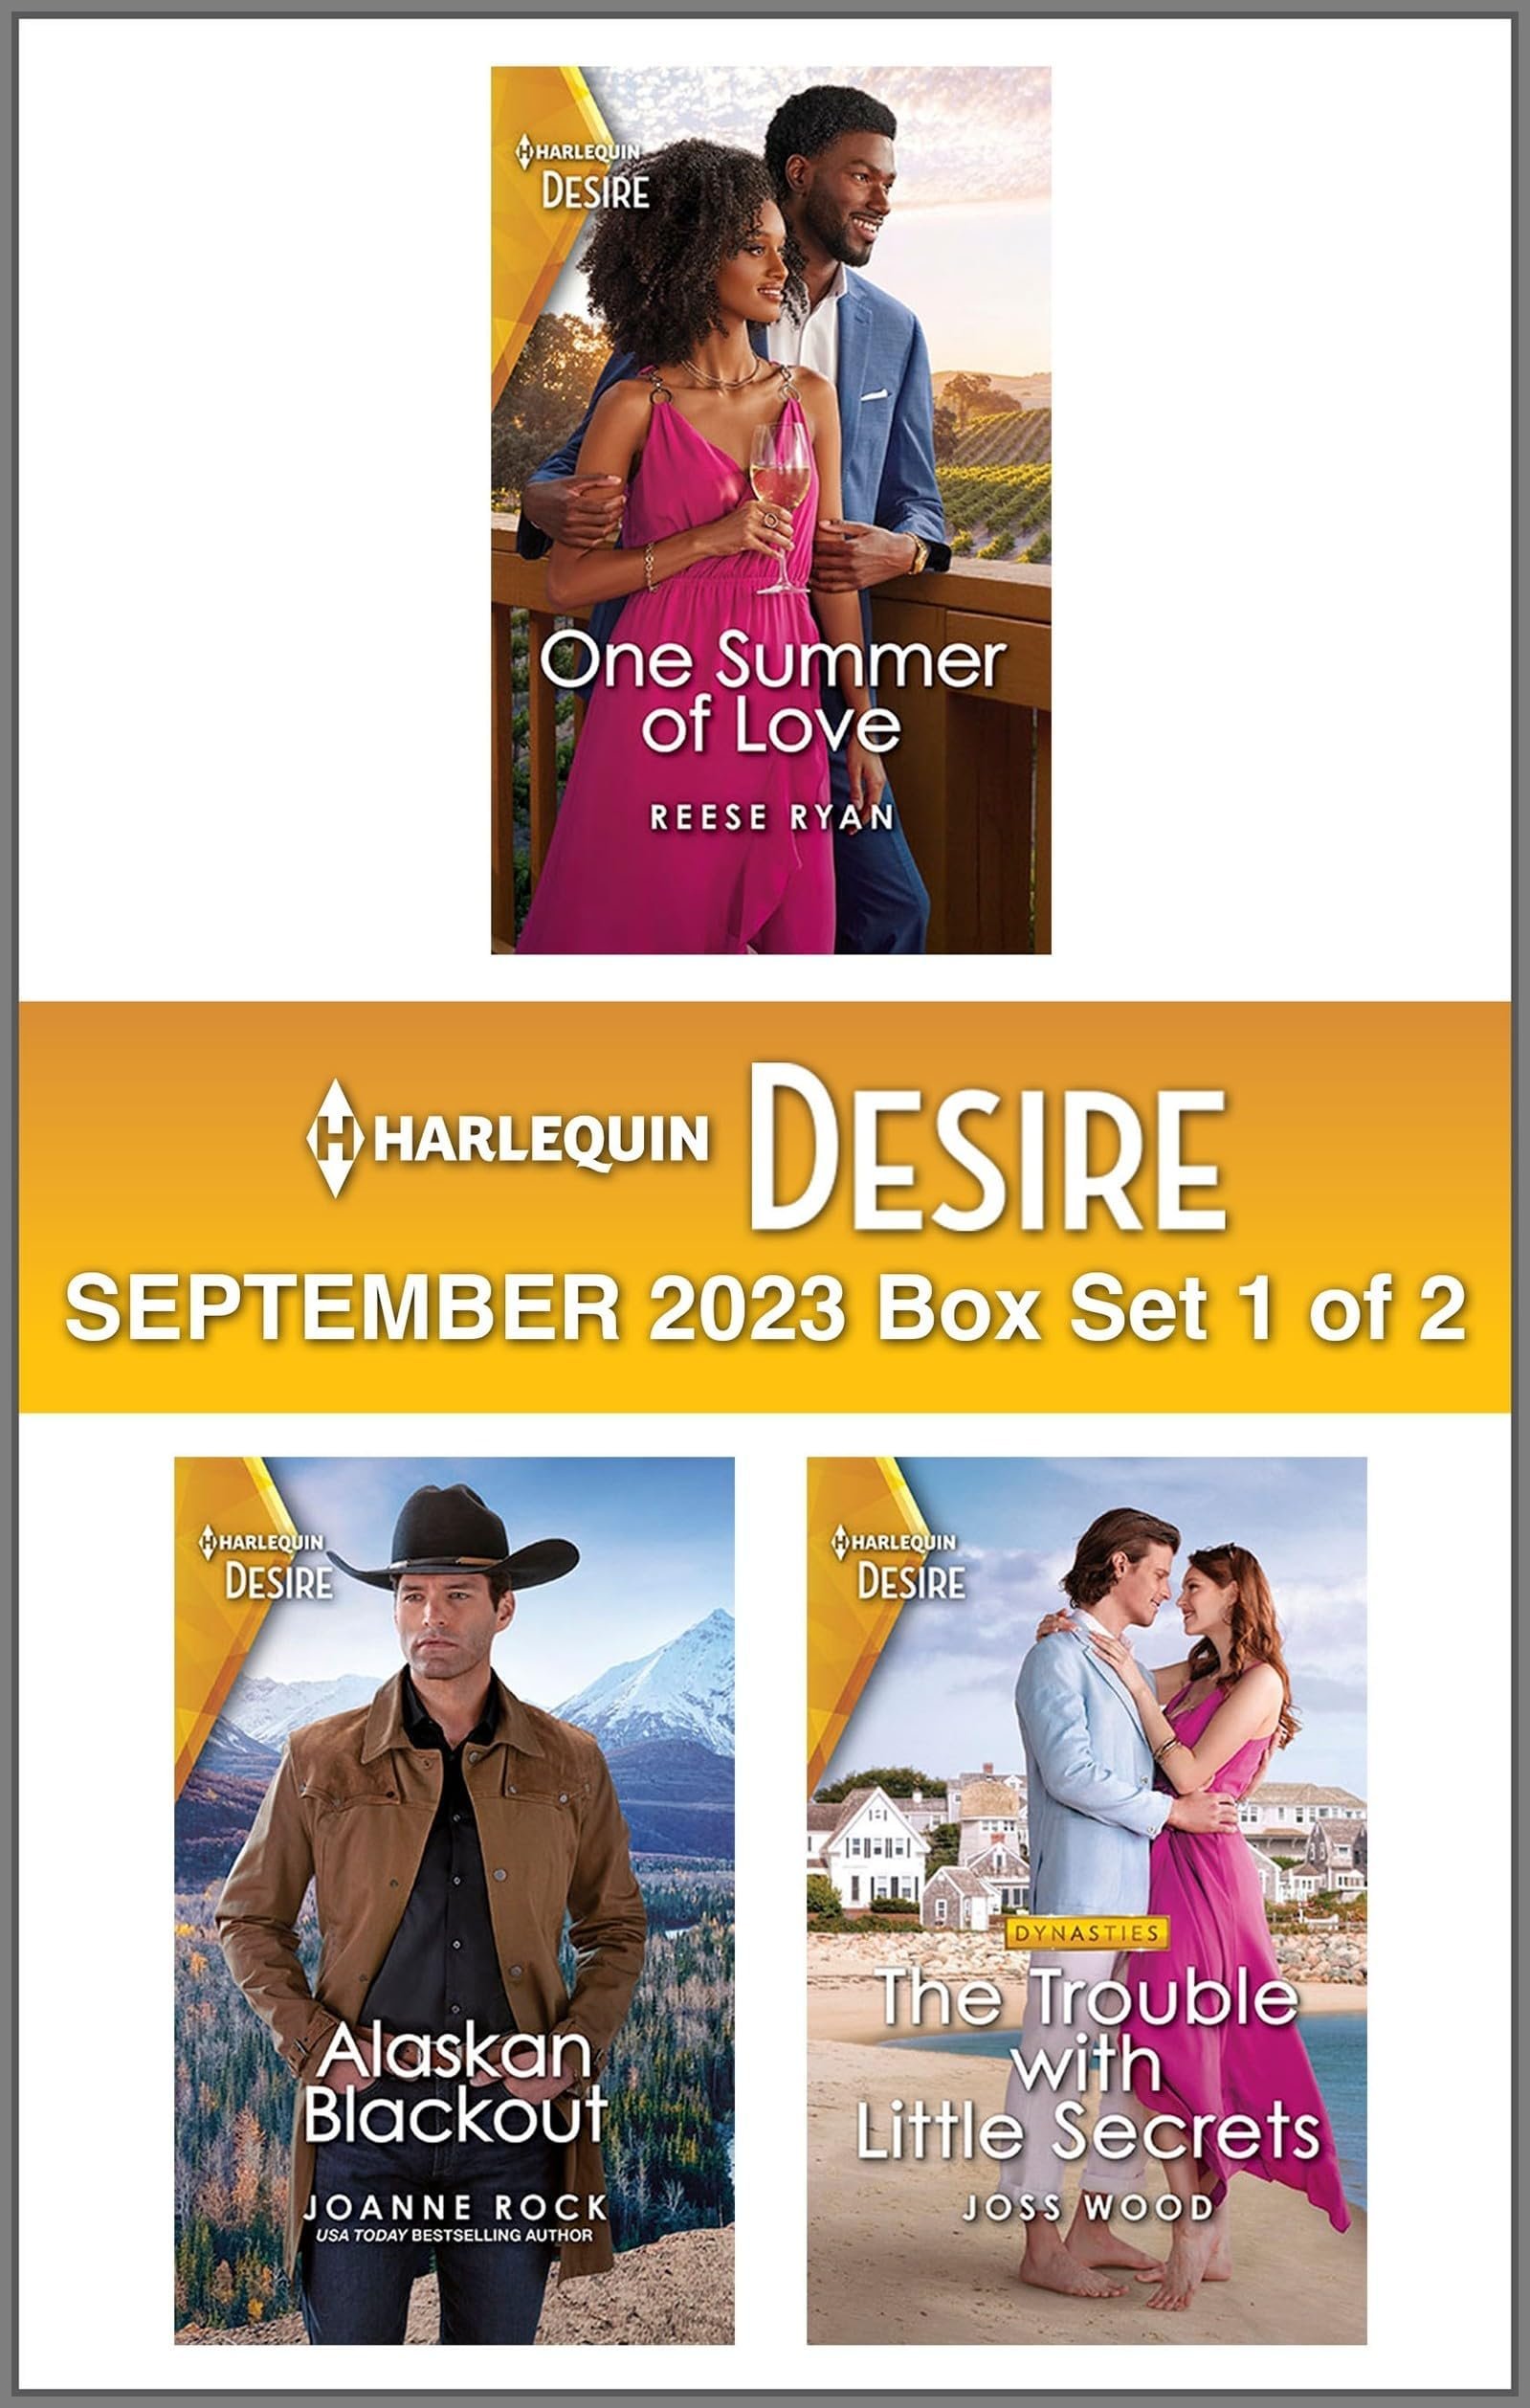 Harlequin Desire September 2023 - Box Set 1 of 2 Cover